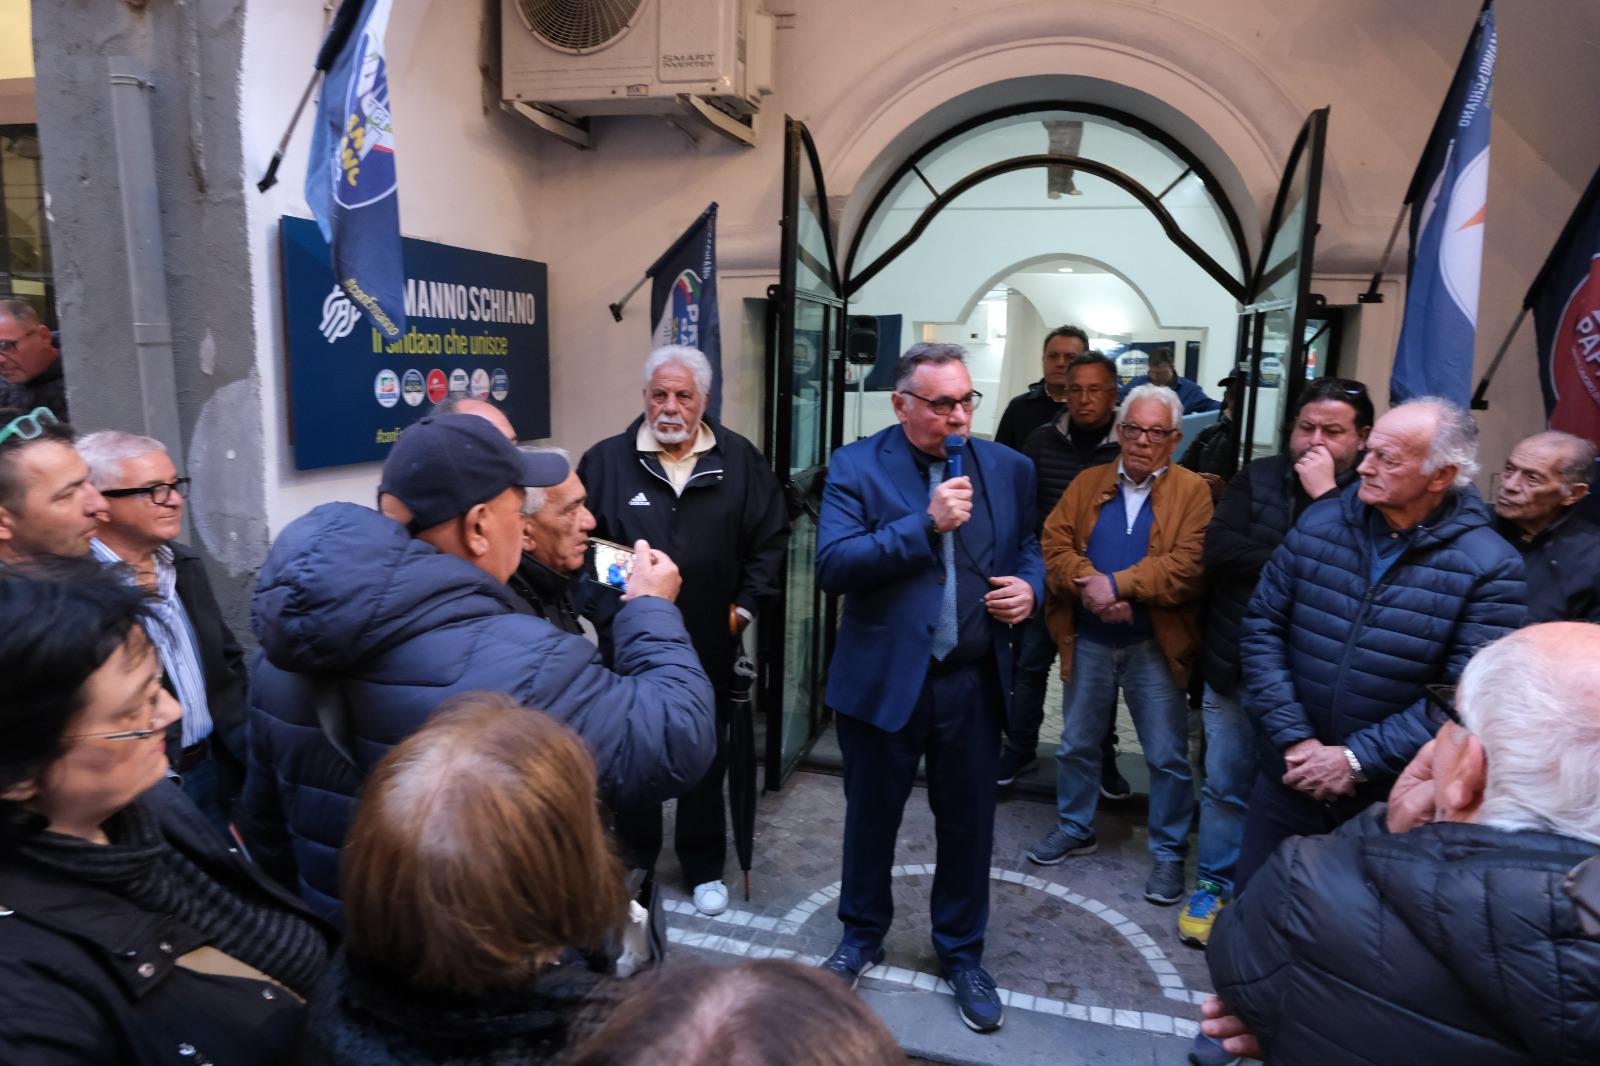 In centinaia a Bacoli per l’apertura del comitato elettorale di Ermanno Schiano